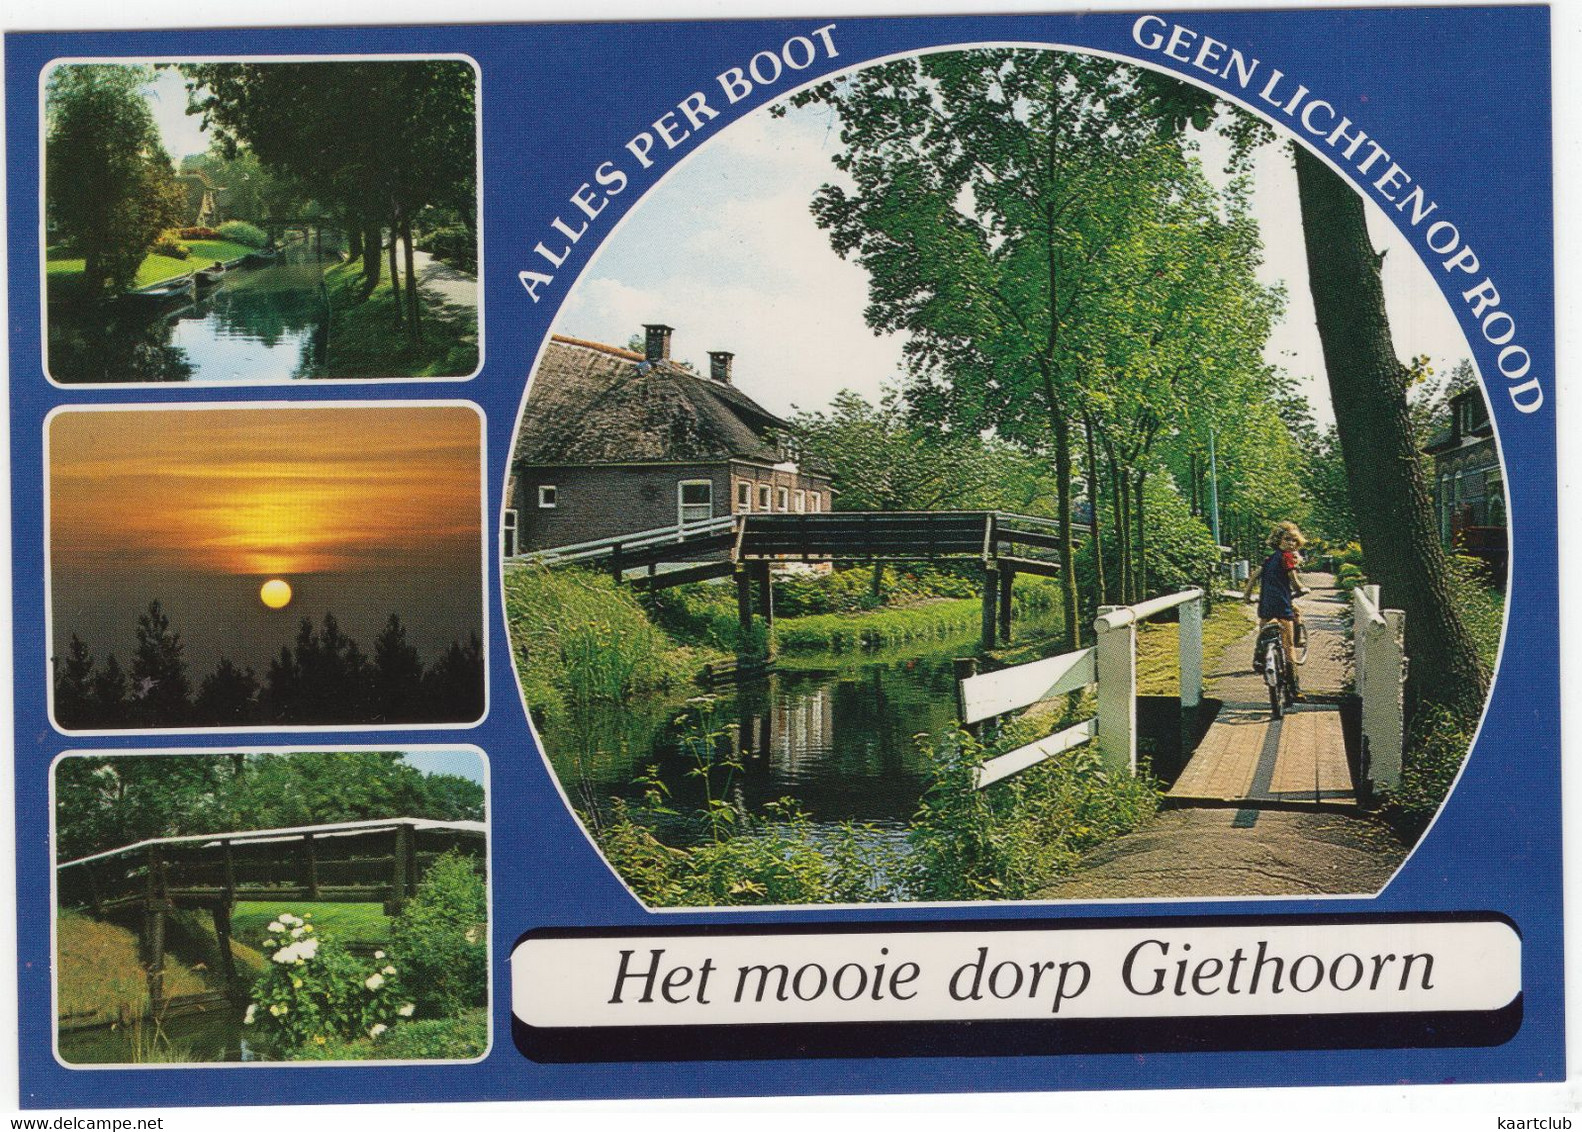 Het Mooie Dorp Giethoorn - 'Alles Per Boot - Geen Lichten Op Rood' - (Ov., Holland/Nederland) Nr. GIN 18 - Giethoorn